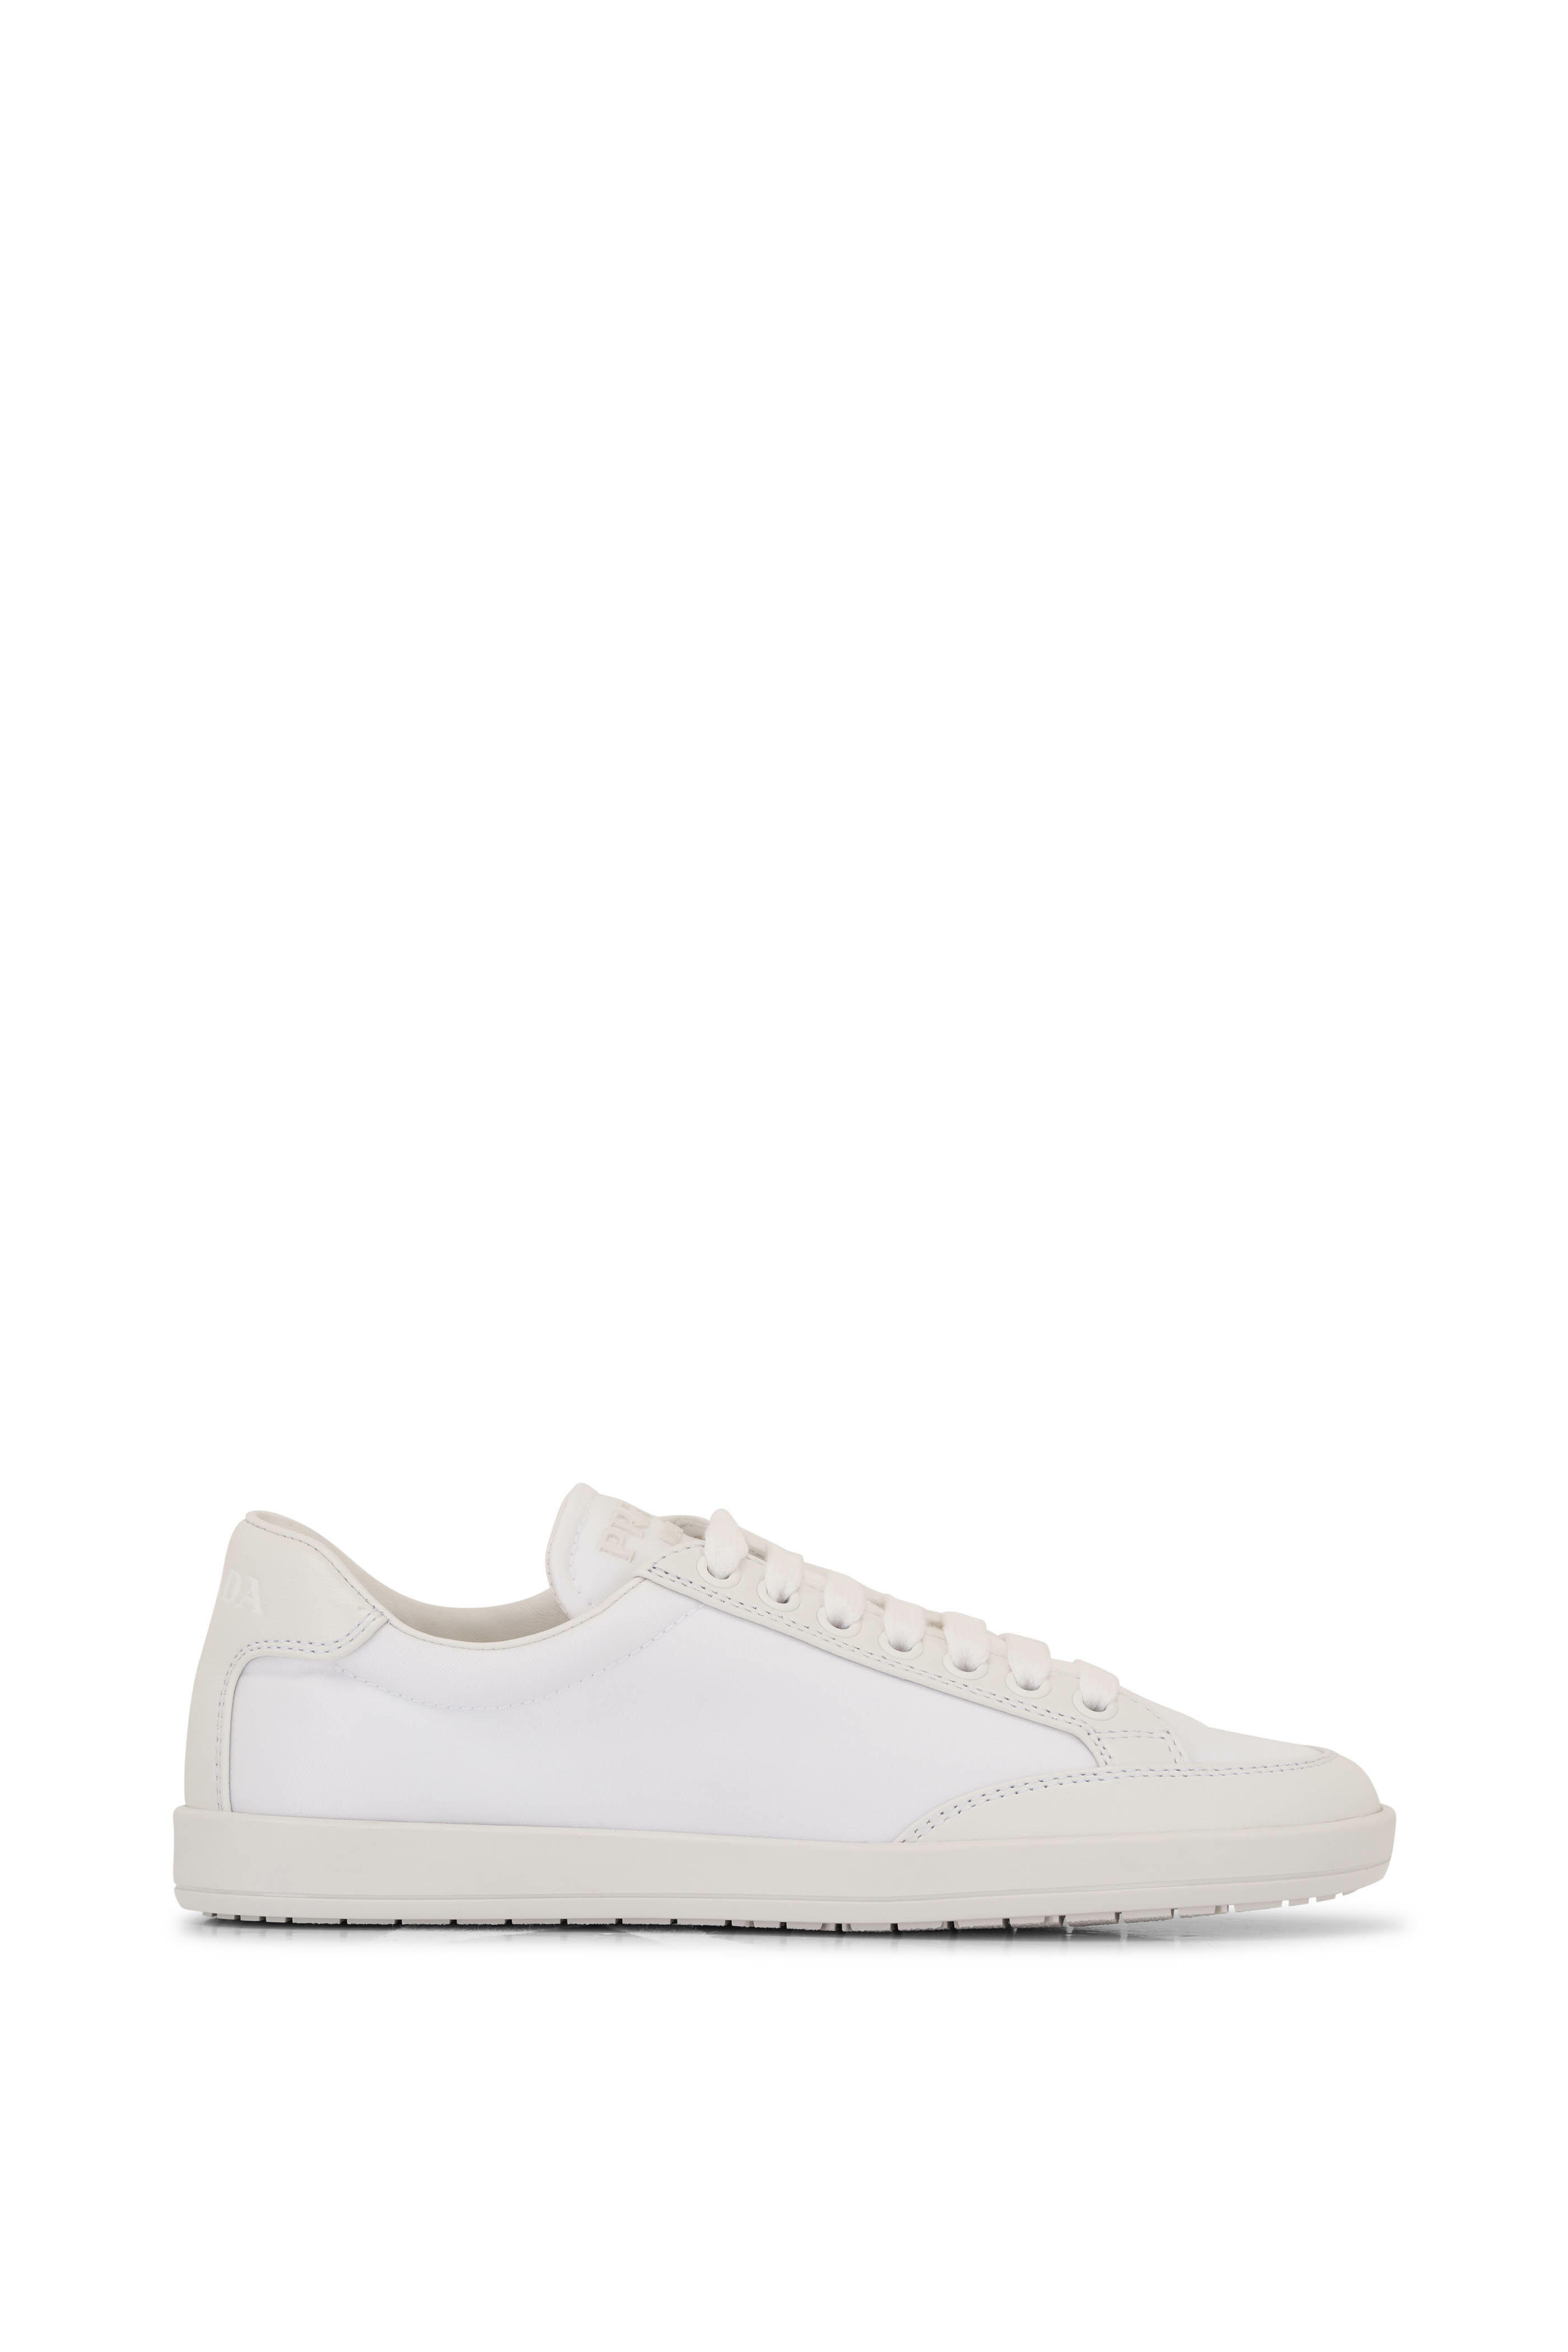 Prada - White Nylon & Leather Sneaker | Mitchell Stores